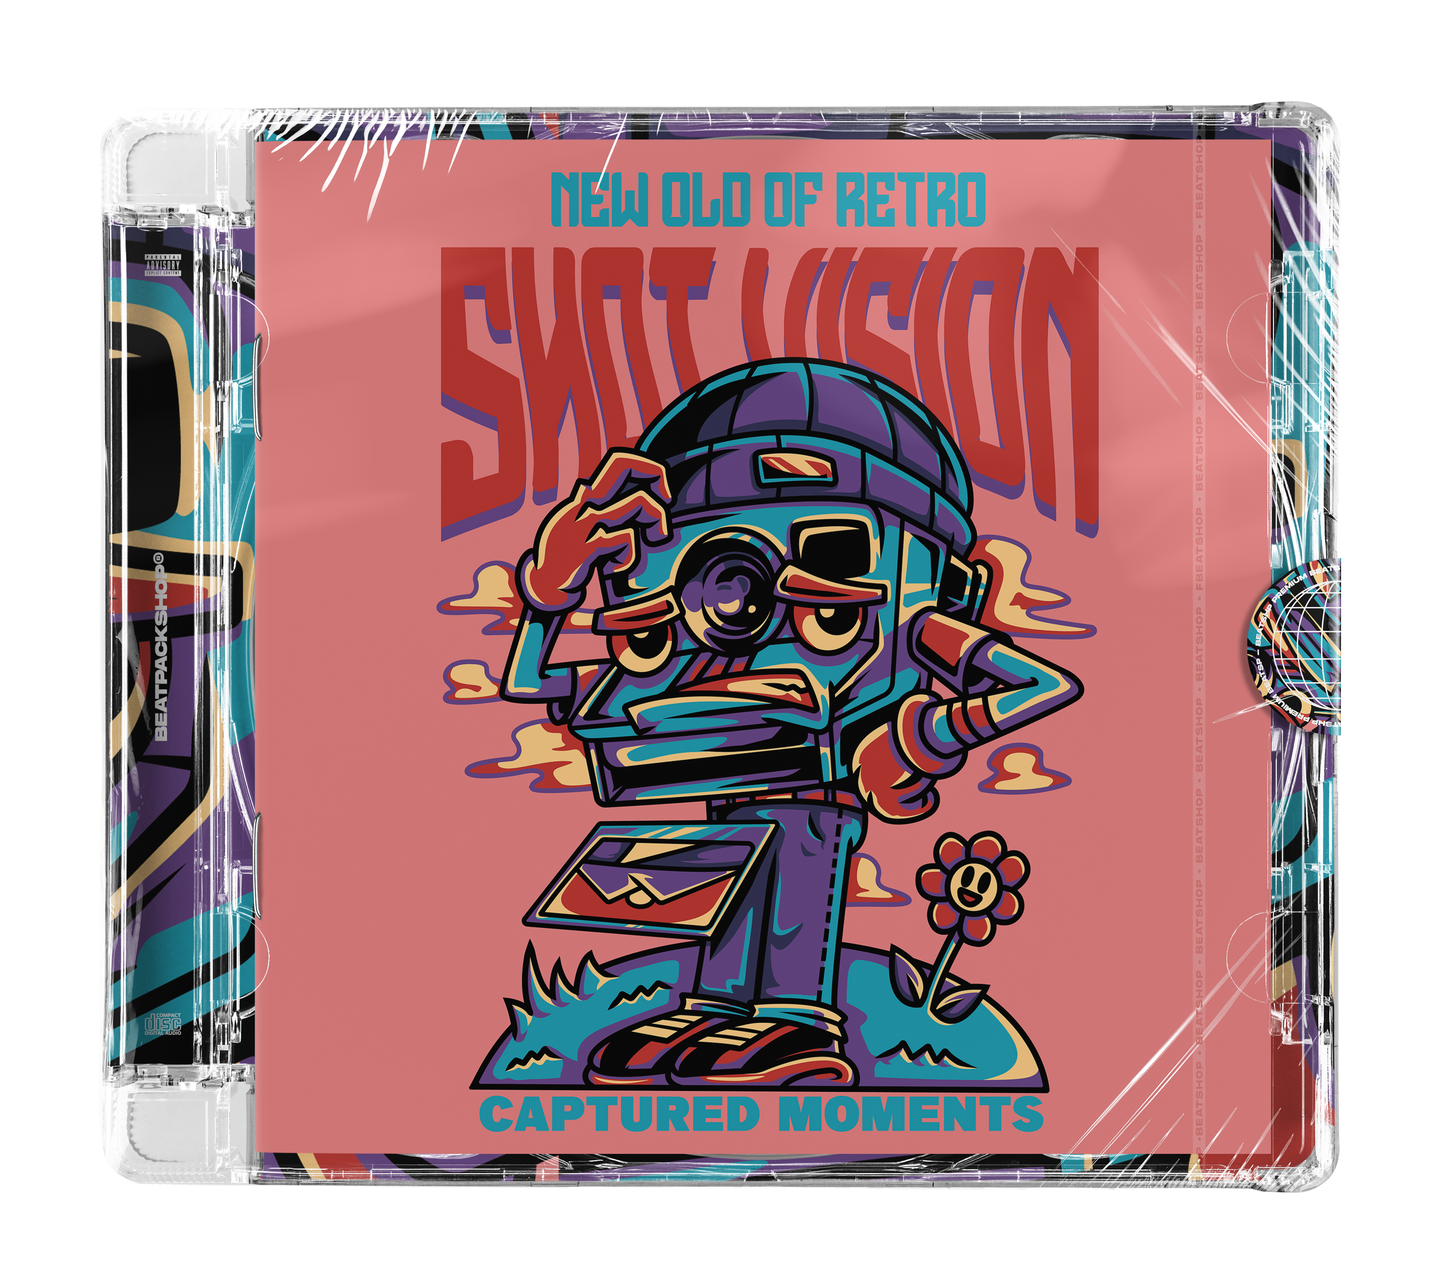 SNOTVISION - Lofi Hip Hop Pack